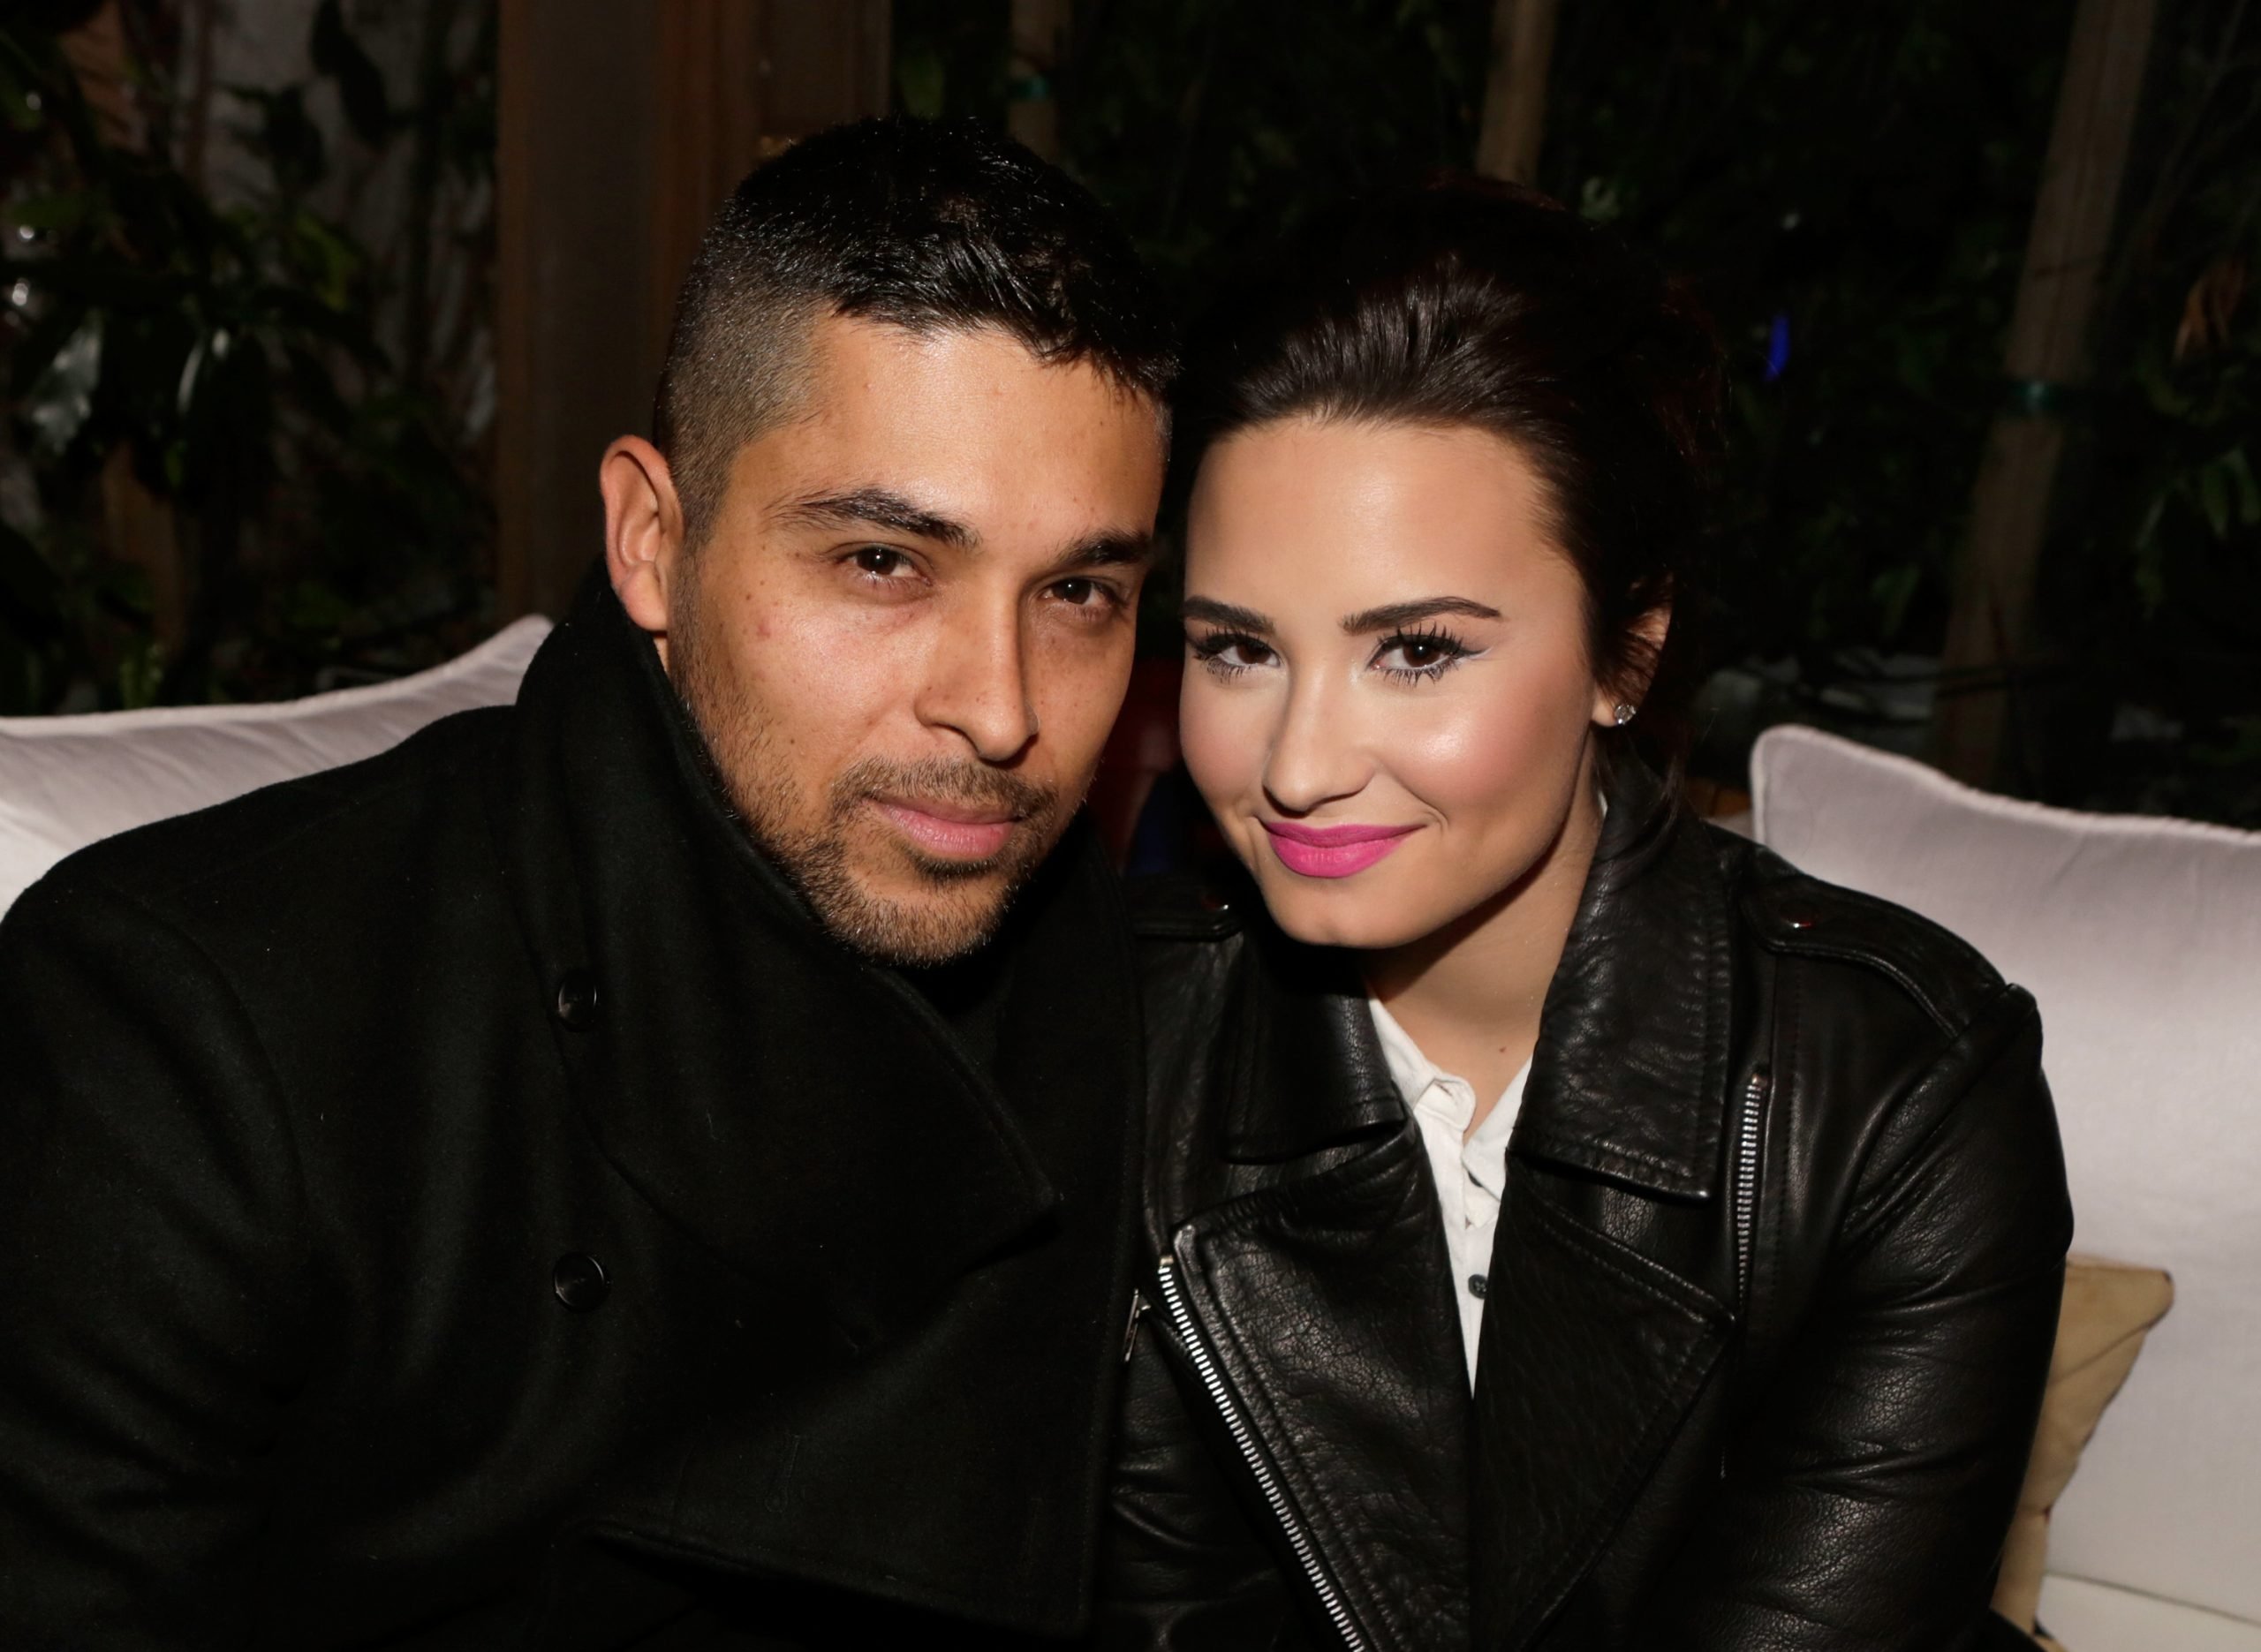 Actor Wilmer Valderrama (L) and singer Demi Lovato on February 13, 2013